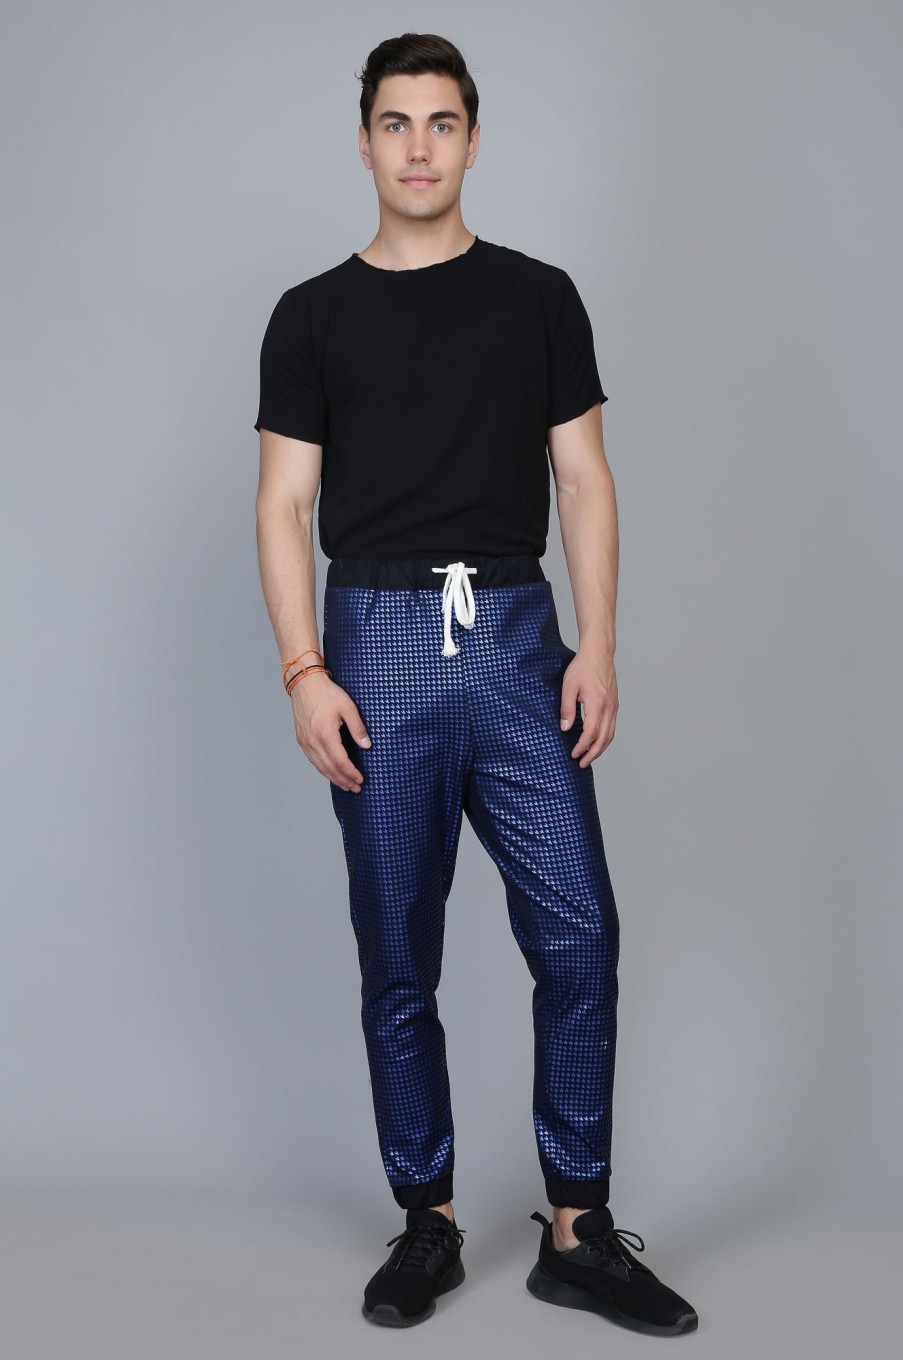 Men's Blue woolen pants with cut bottoms